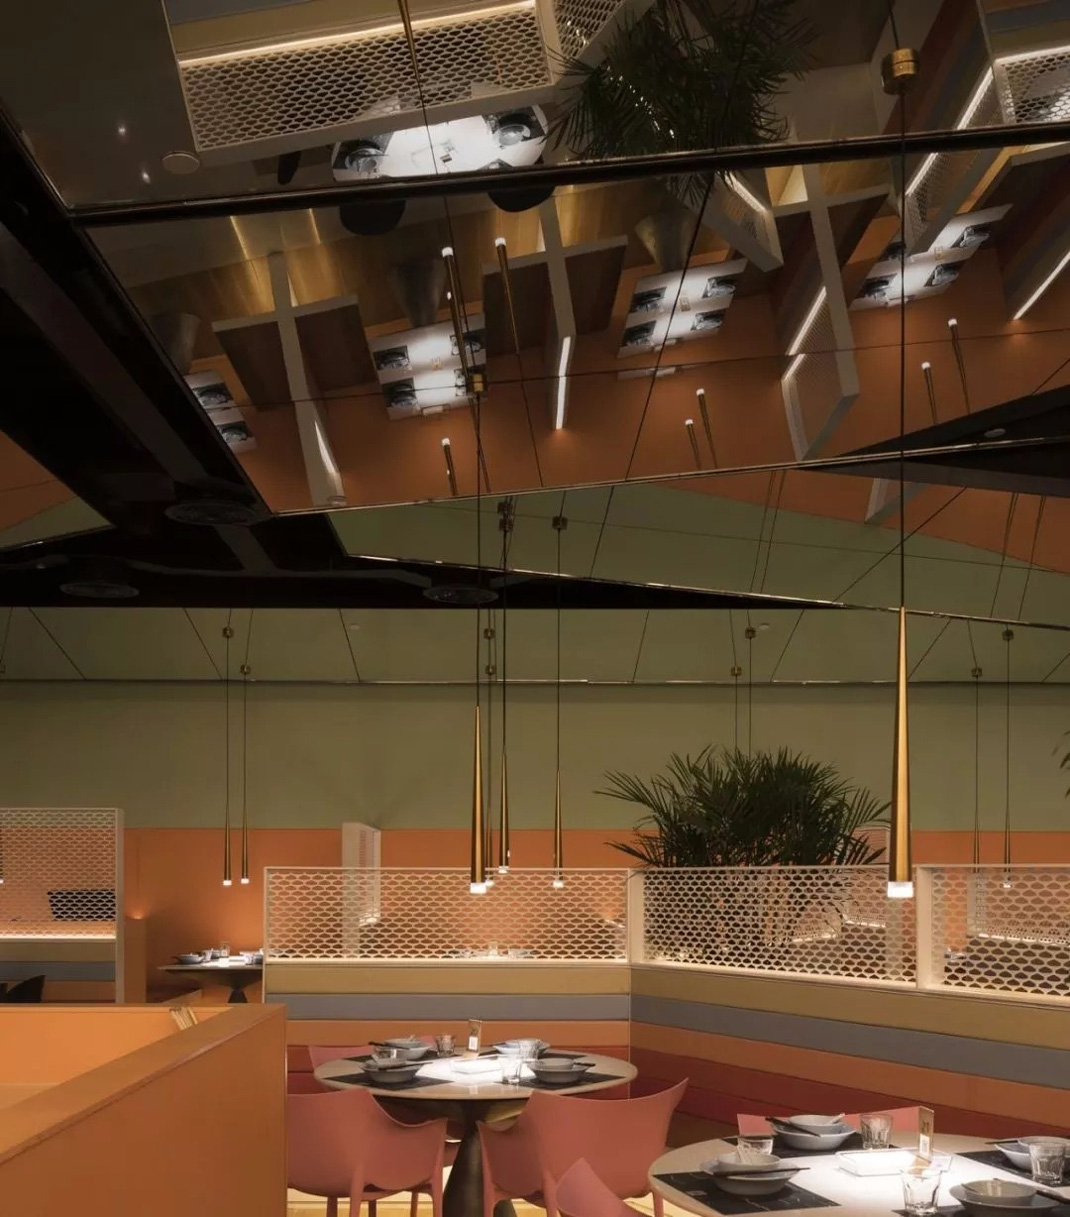 亲橙里外婆家与炉鱼 杭州 主题餐厅 餐饮空间 烤鱼 装置 logo设计 VI设计 空间设计 视觉餐饮